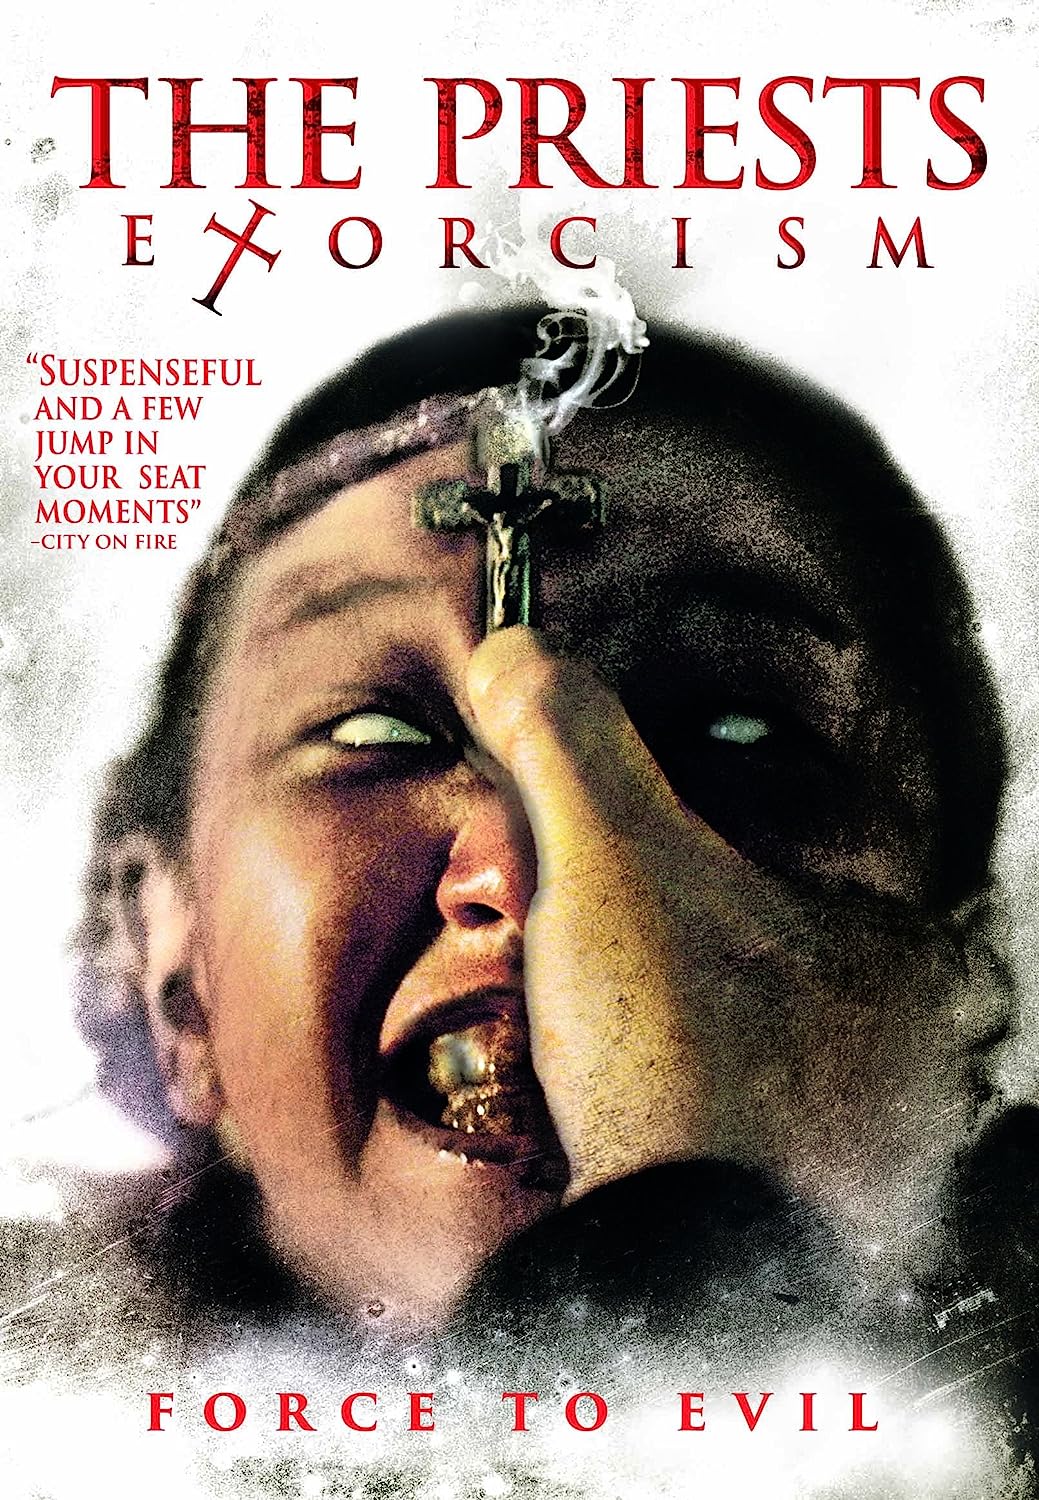 Preists Exorcism - Darkside Records